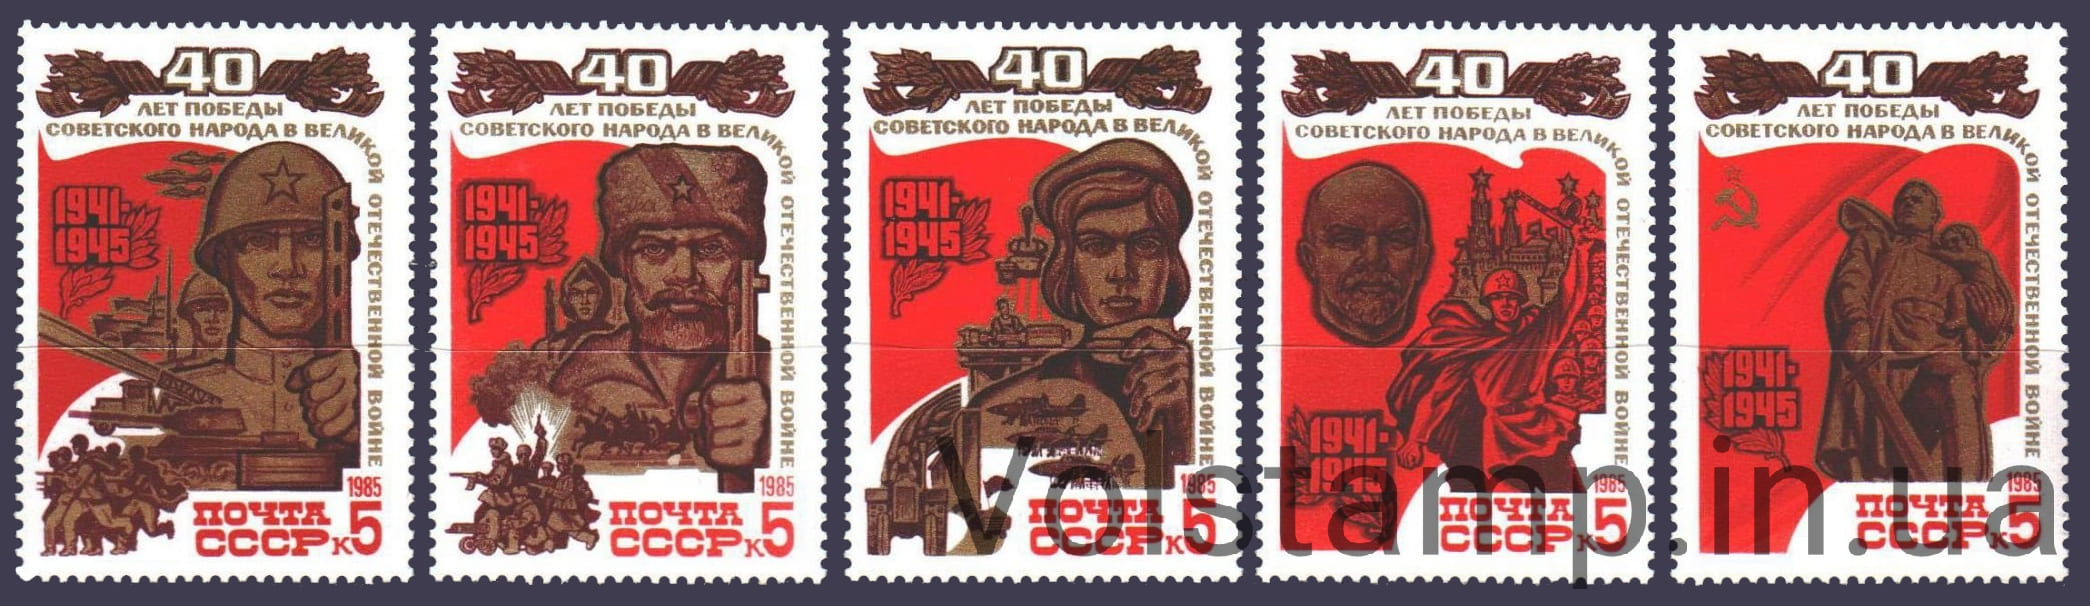 1985 серия марок 40 лет Победы советского народа в Великой Отечественной войне 1941-1945 гг №5549-5553